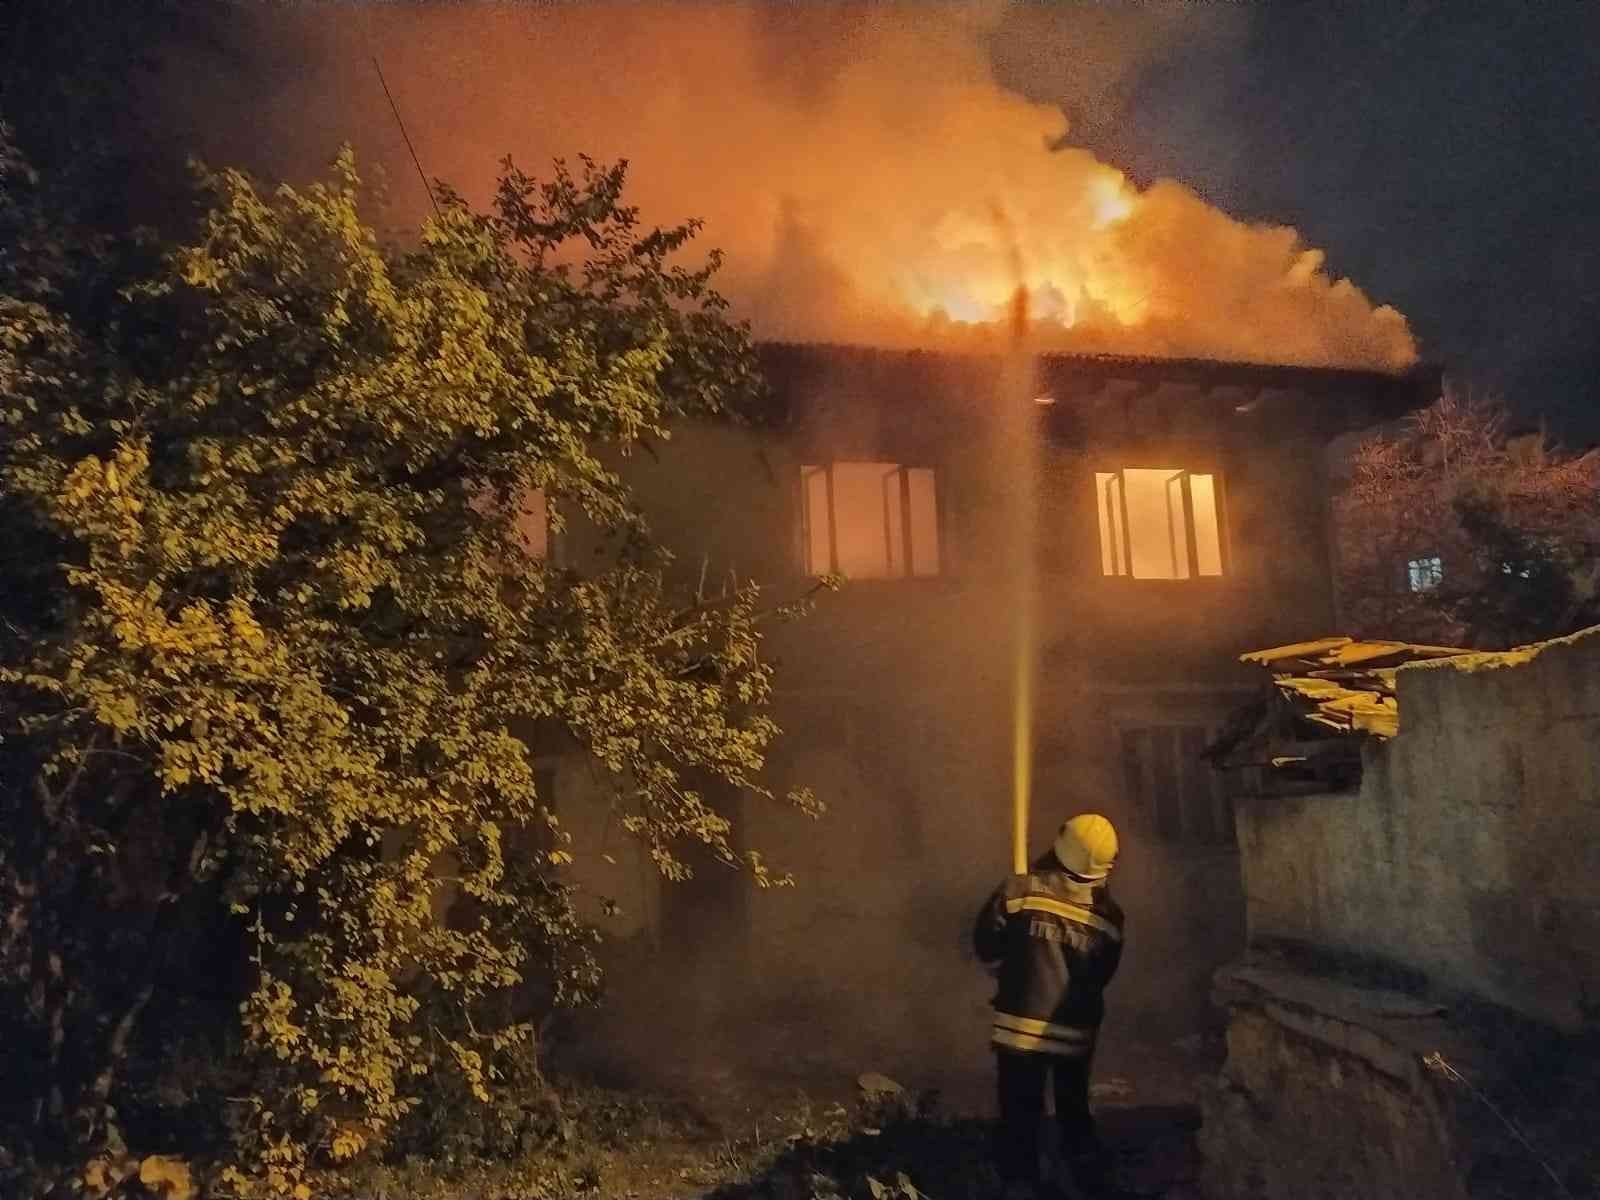 Son 2 yılda kimsenin oturmadığı iki katlı ev yandı #kastamonu